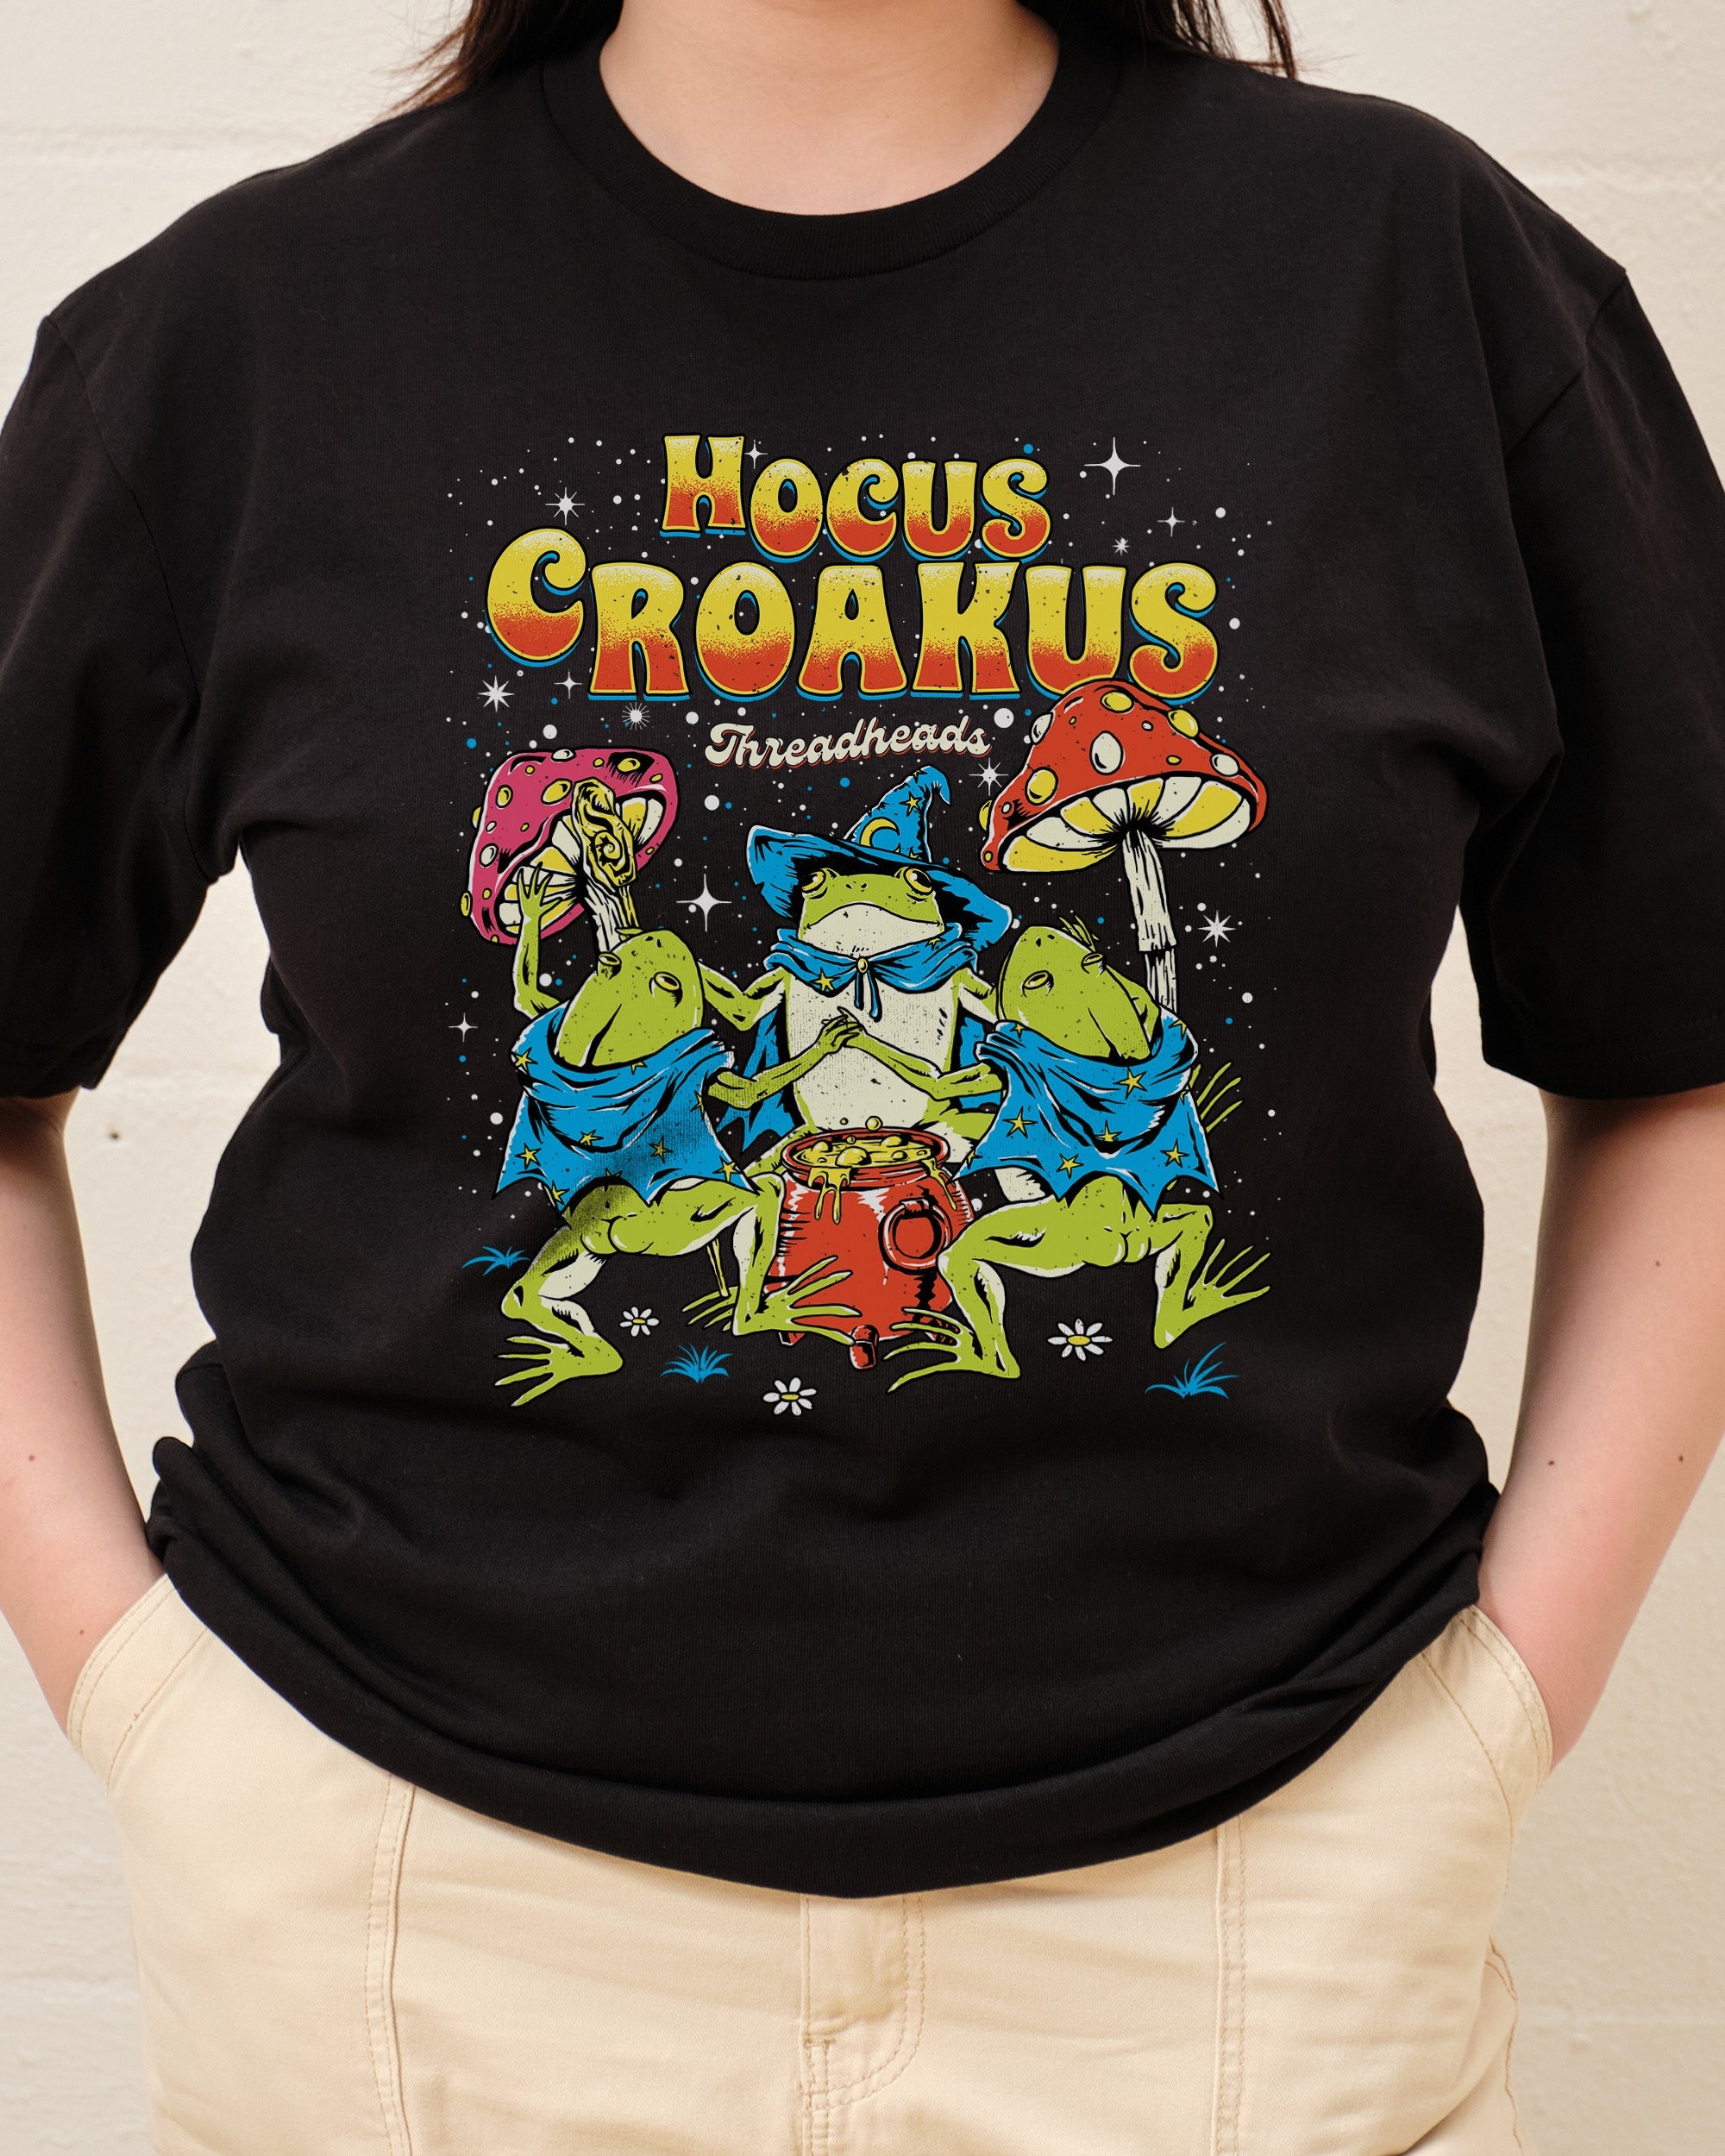 Hocus Croakus T-Shirt Australia Online Black